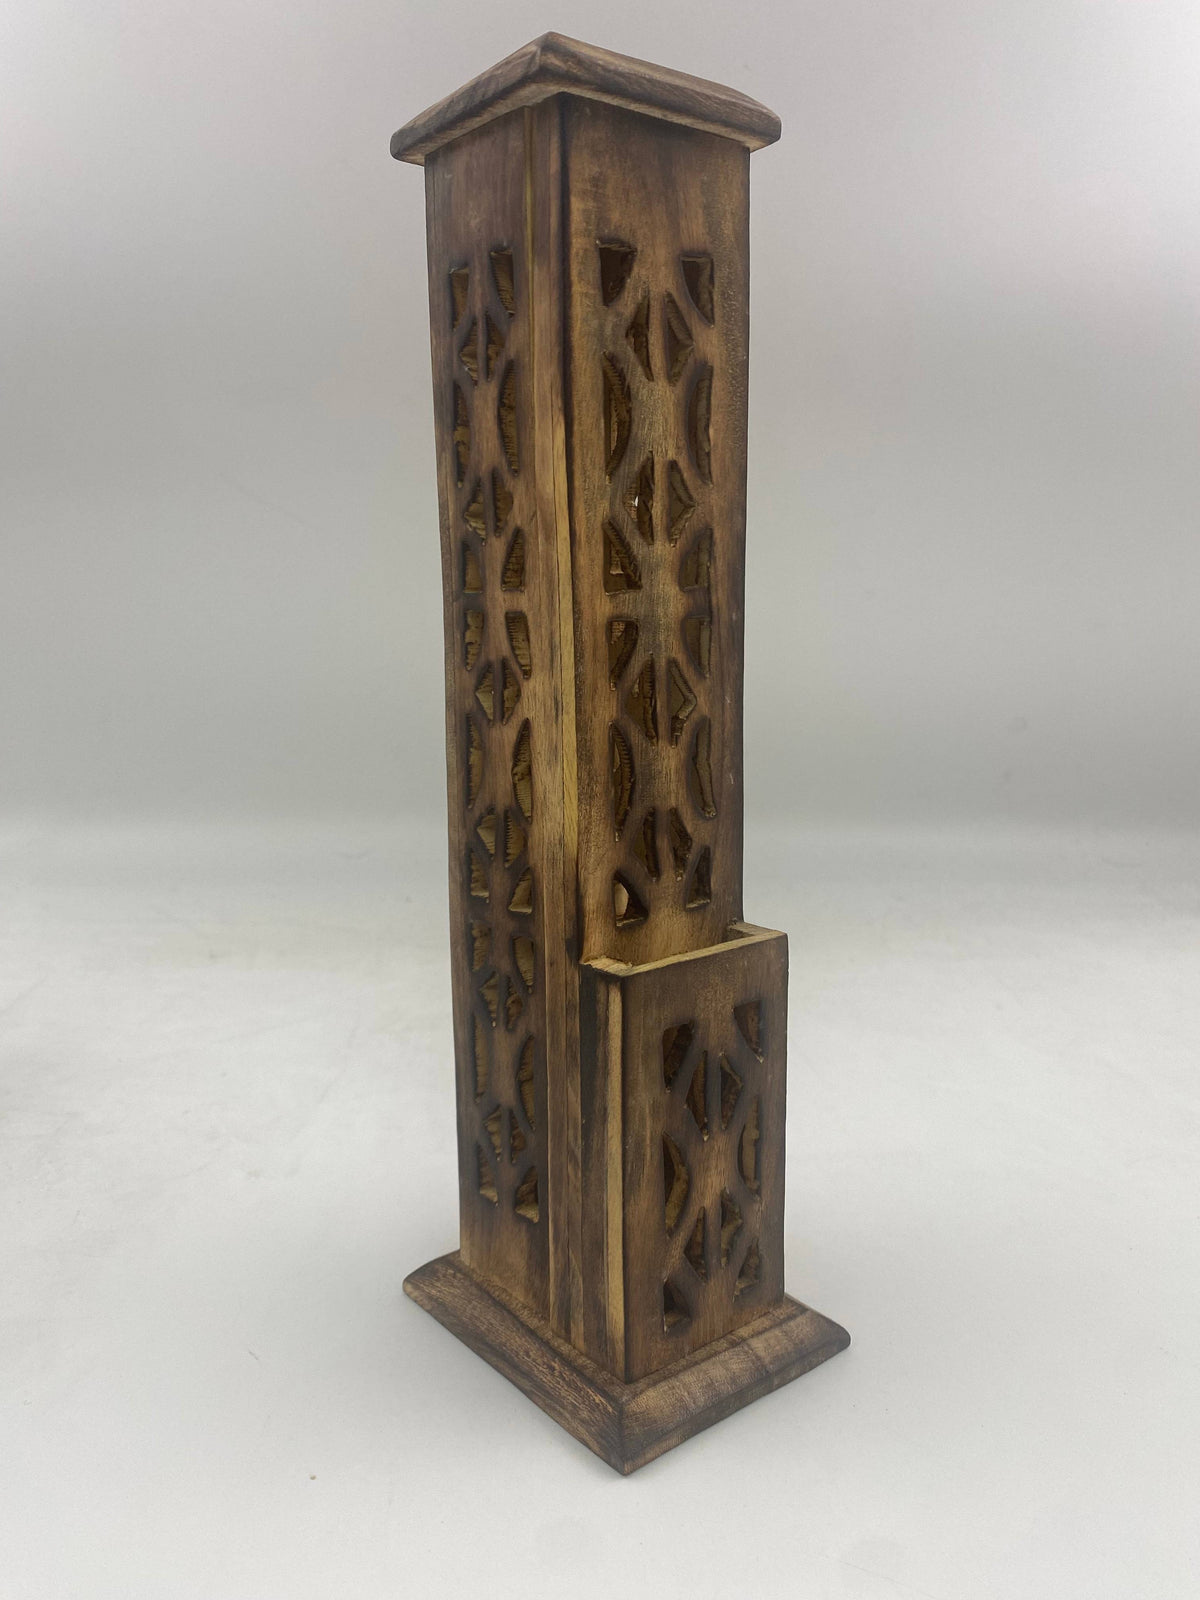 12" Wooden Incense Tower Burner